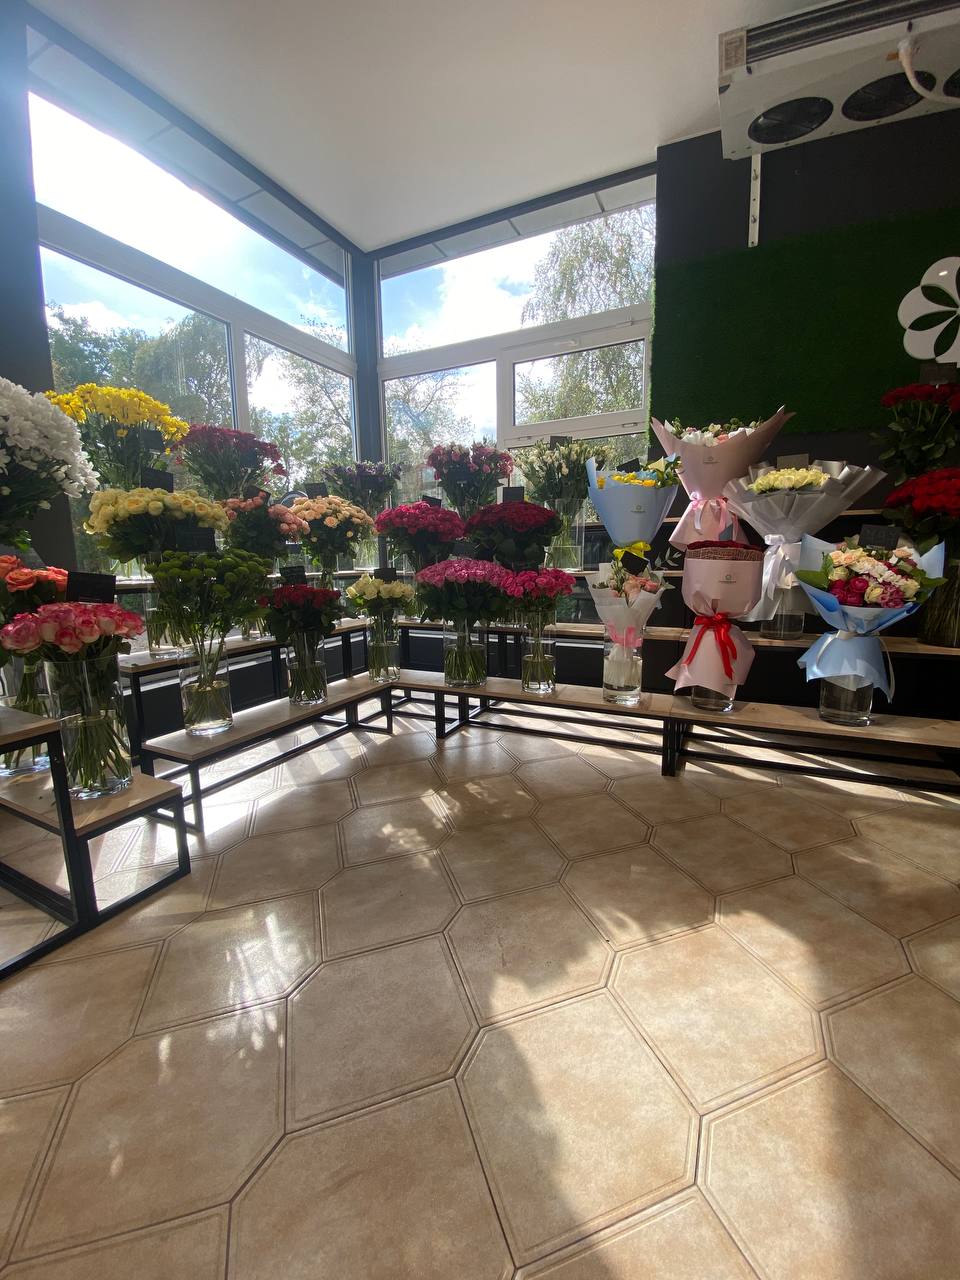 Магазин квітів в місті Запоріжжя